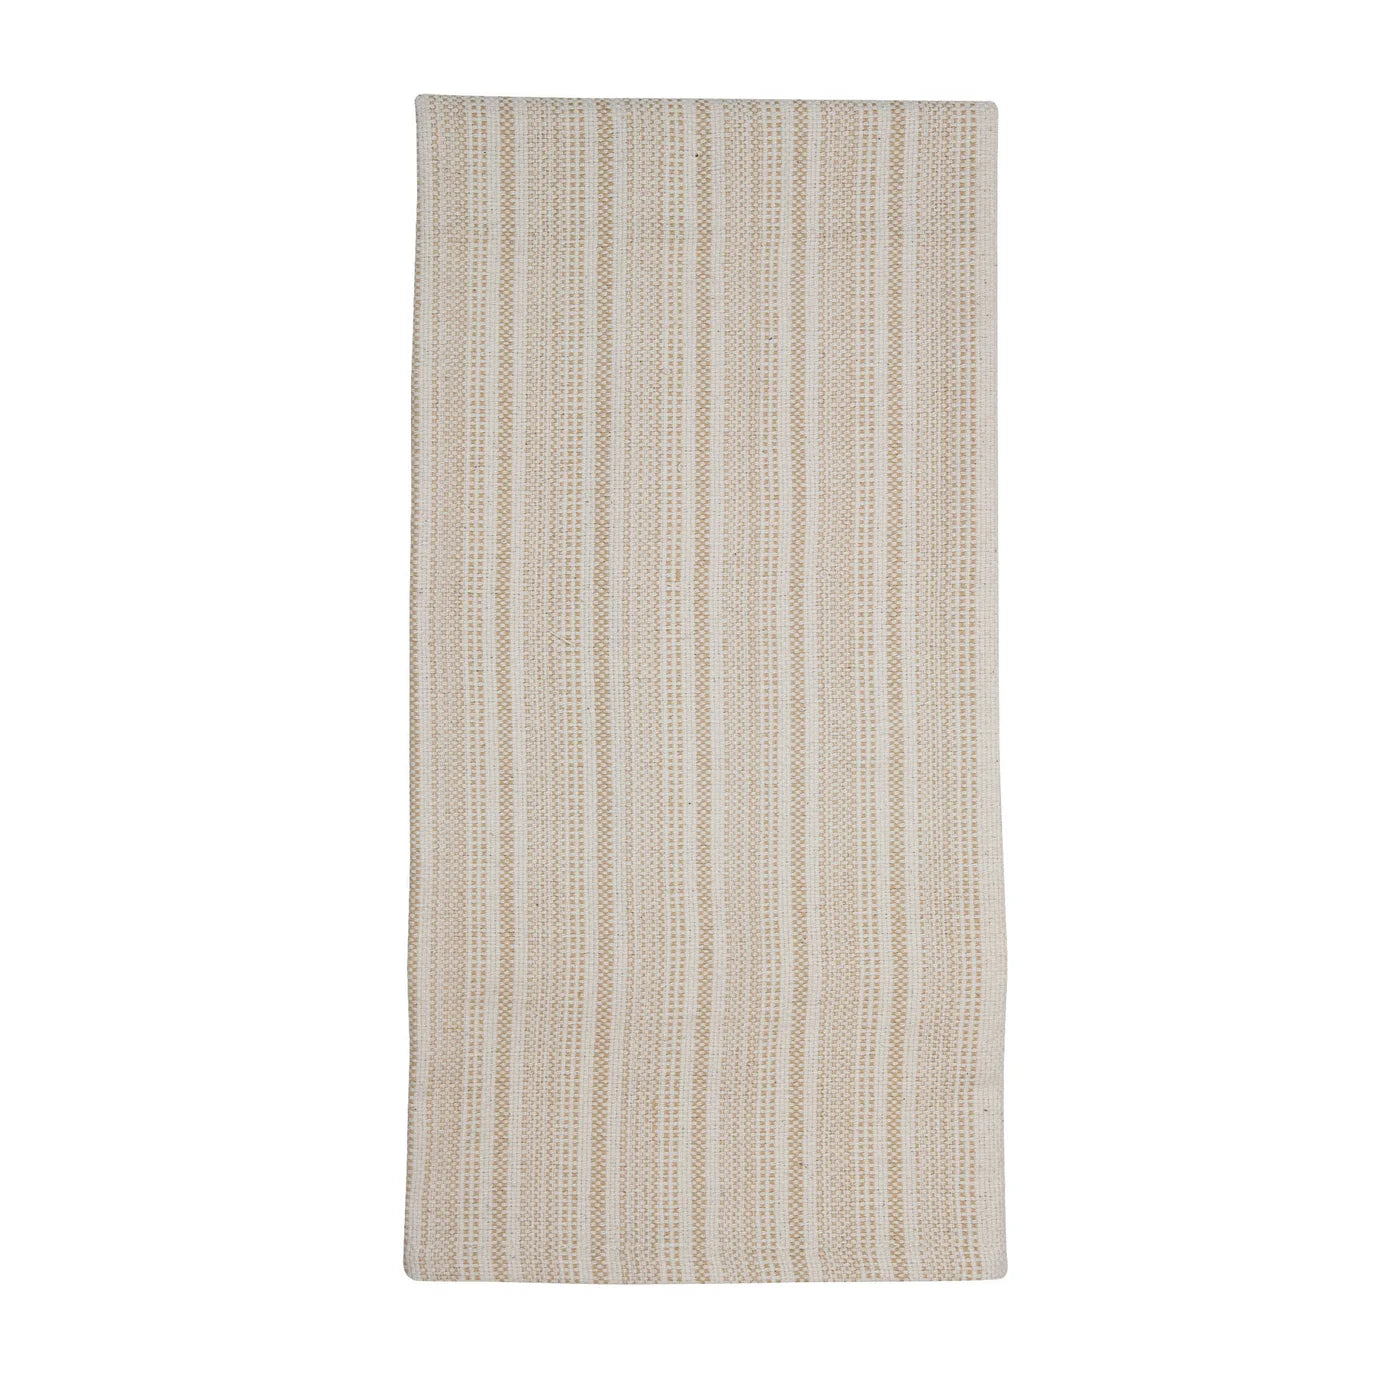 Elena Tea Towel Gray/Tan Stripe